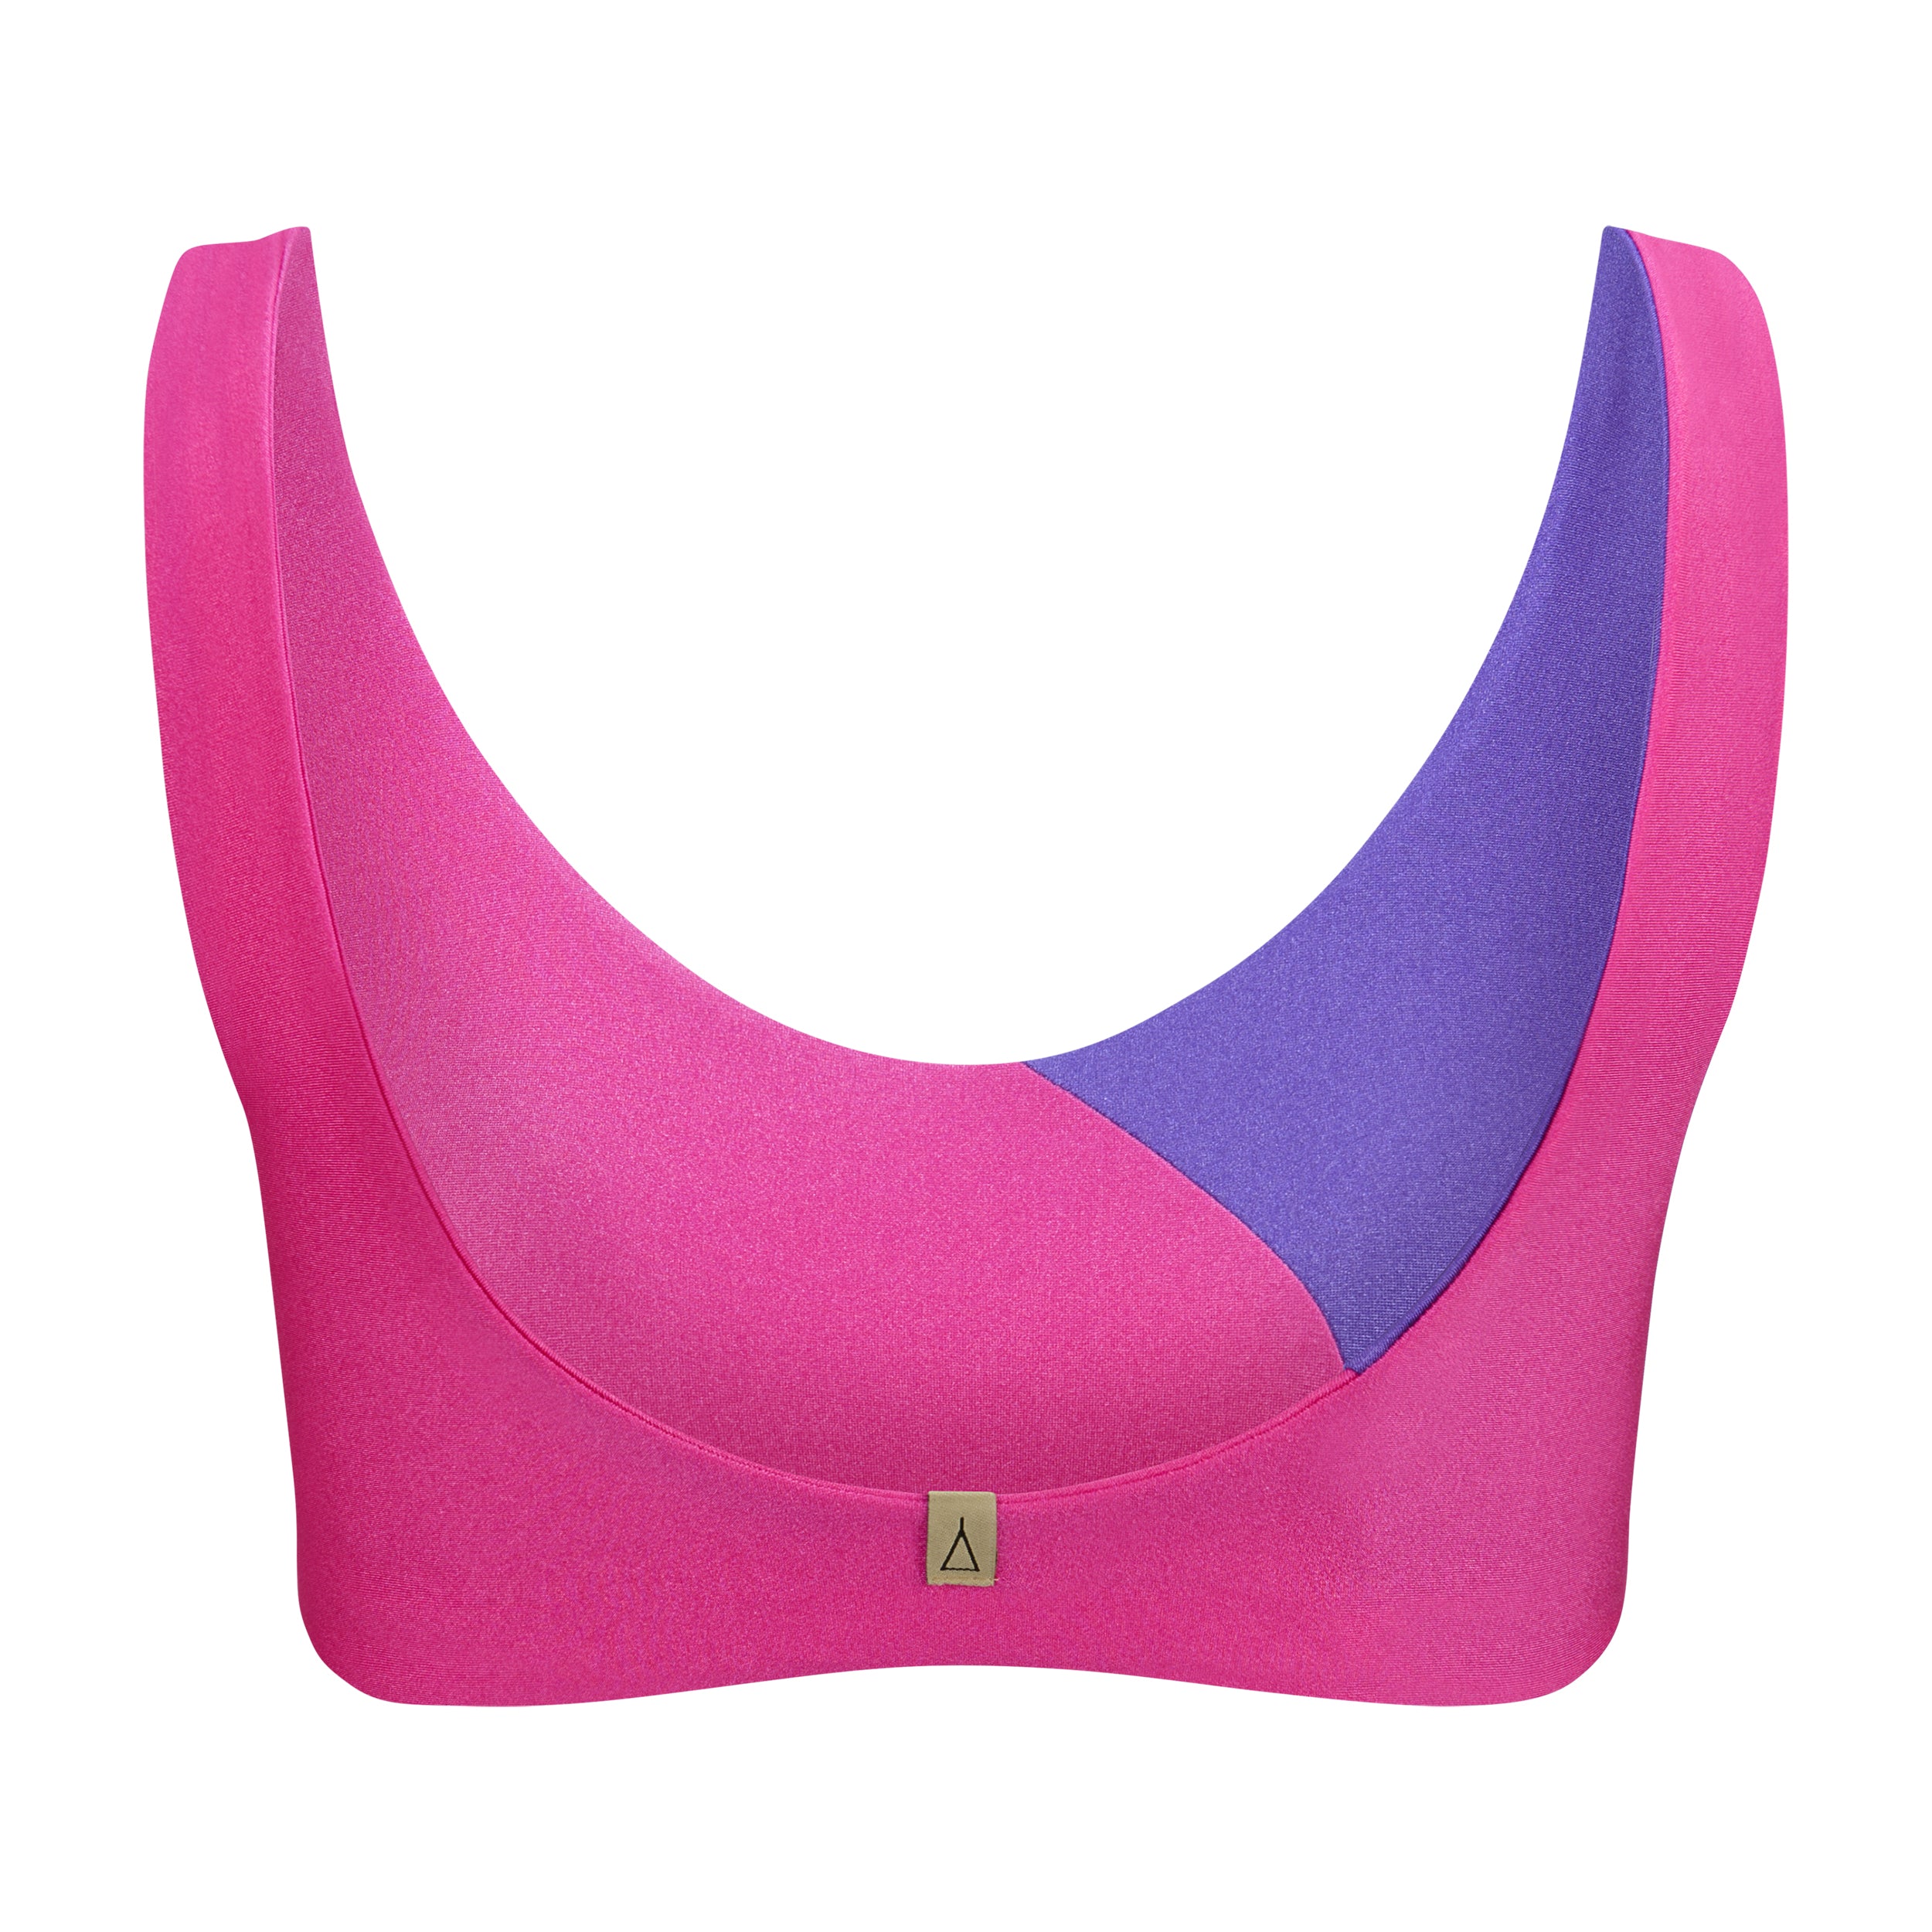 INASKA Bikini Oberteil mit Color Blocking Limited Edition SHINE von hinten